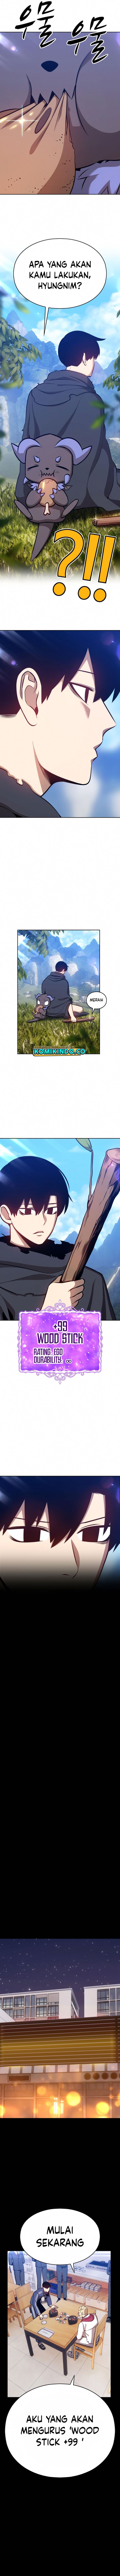 +99 Wooden Stick Chapter 05 fix